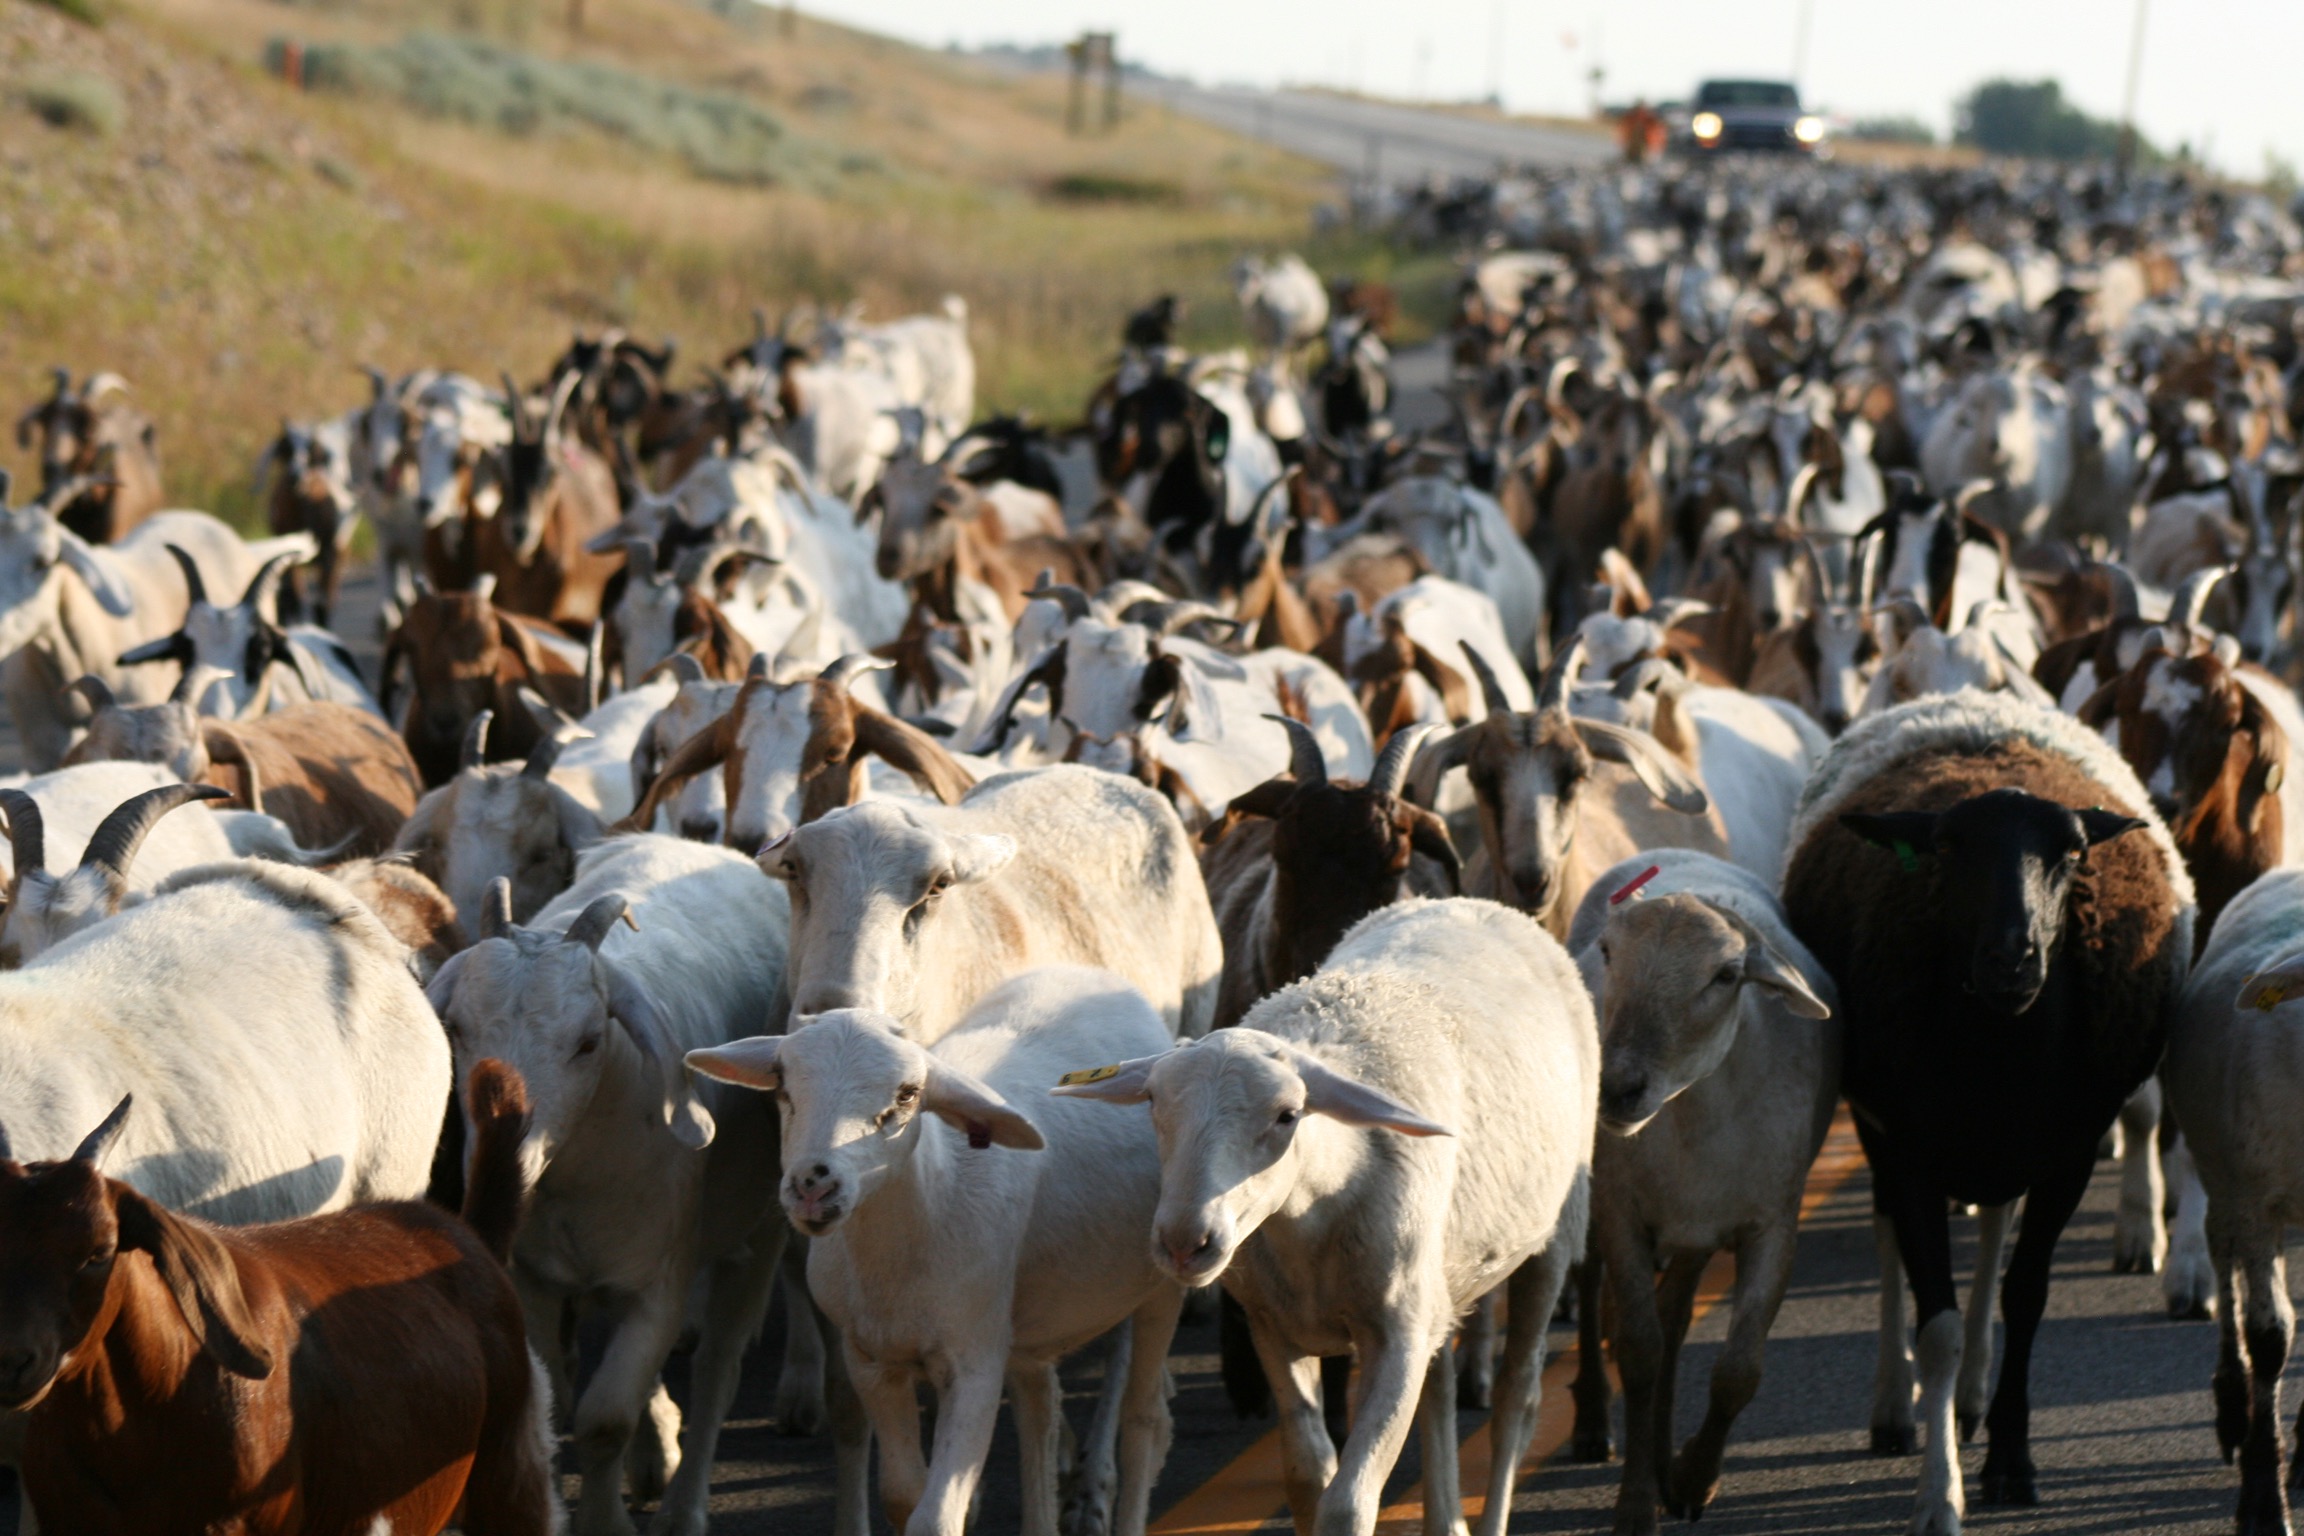 A herd of goats walks down the street. 